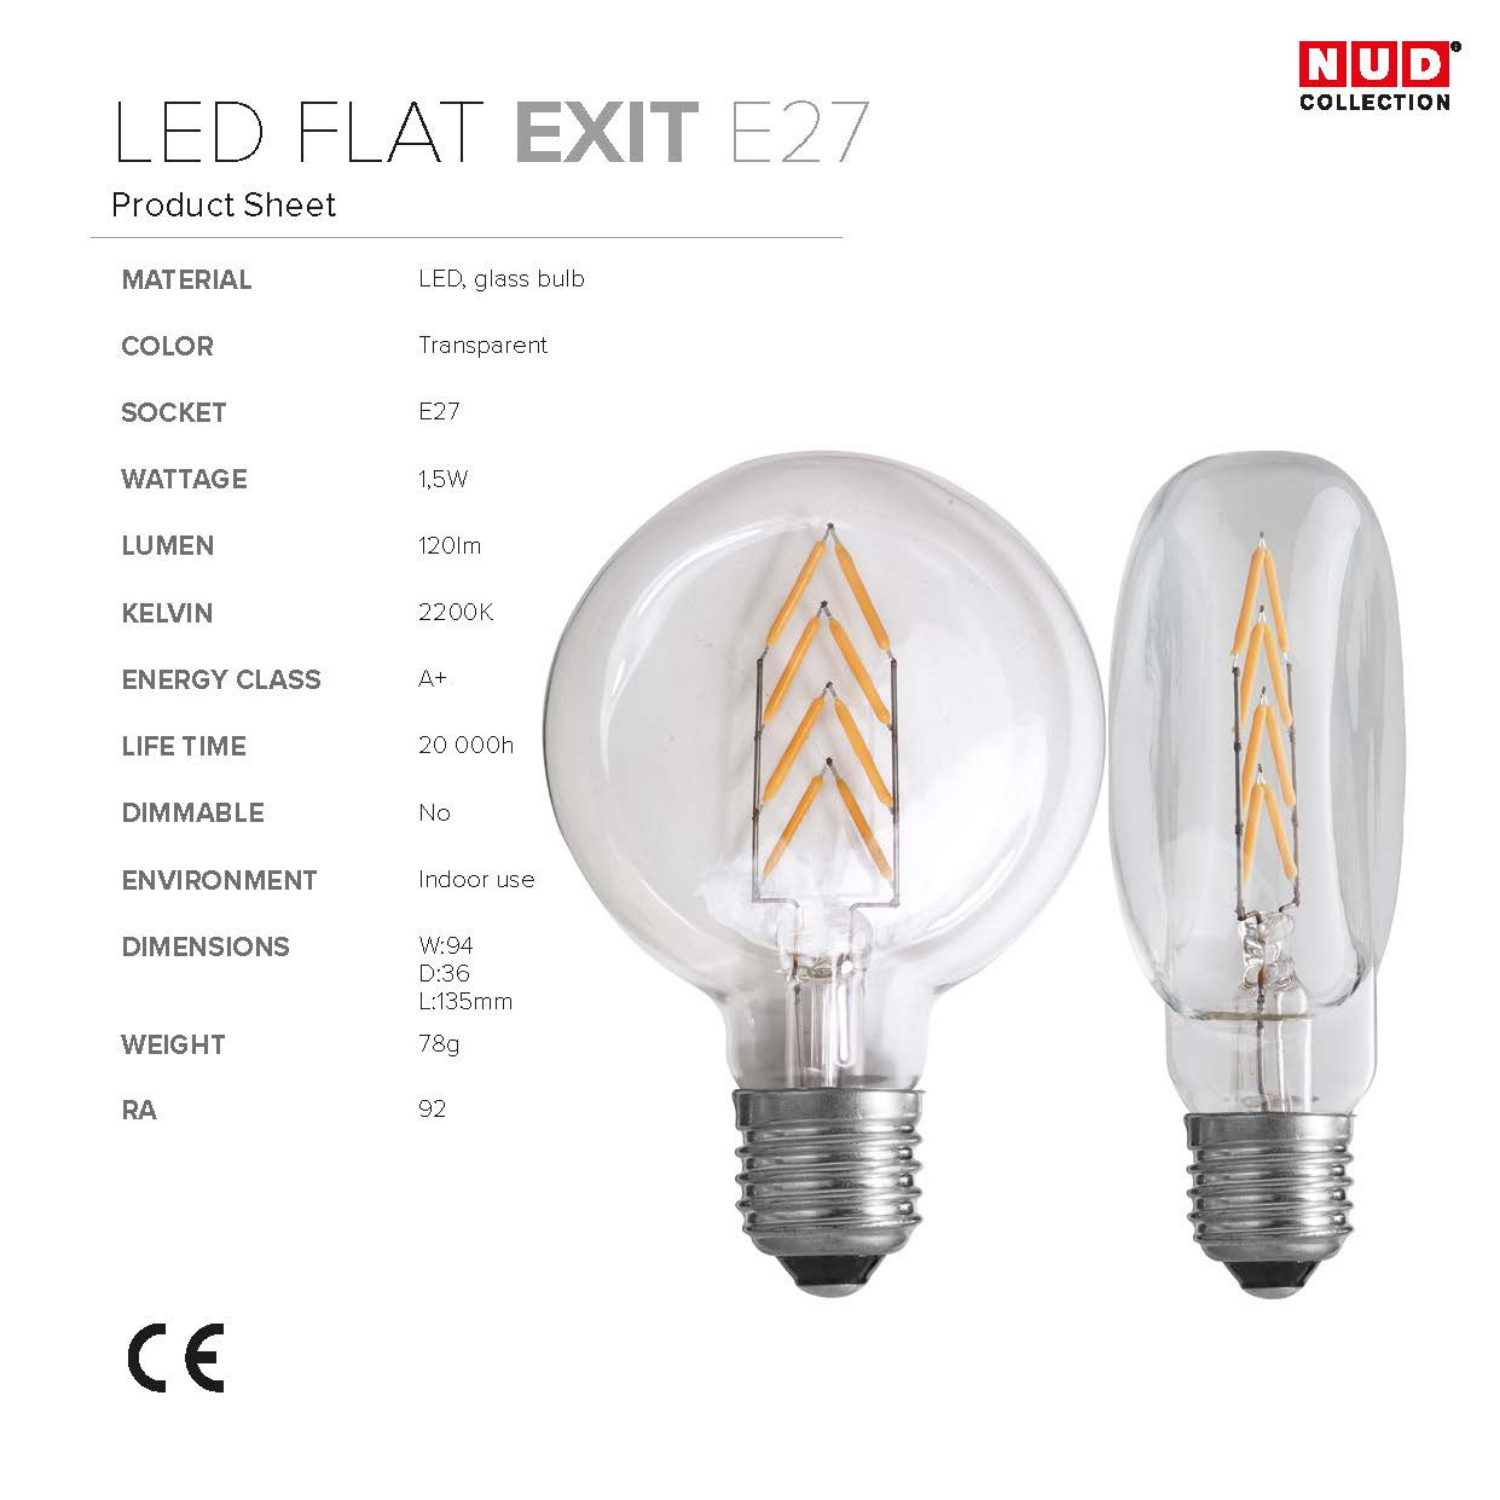 Ampoule plate led flat exit nud collection fiche produit